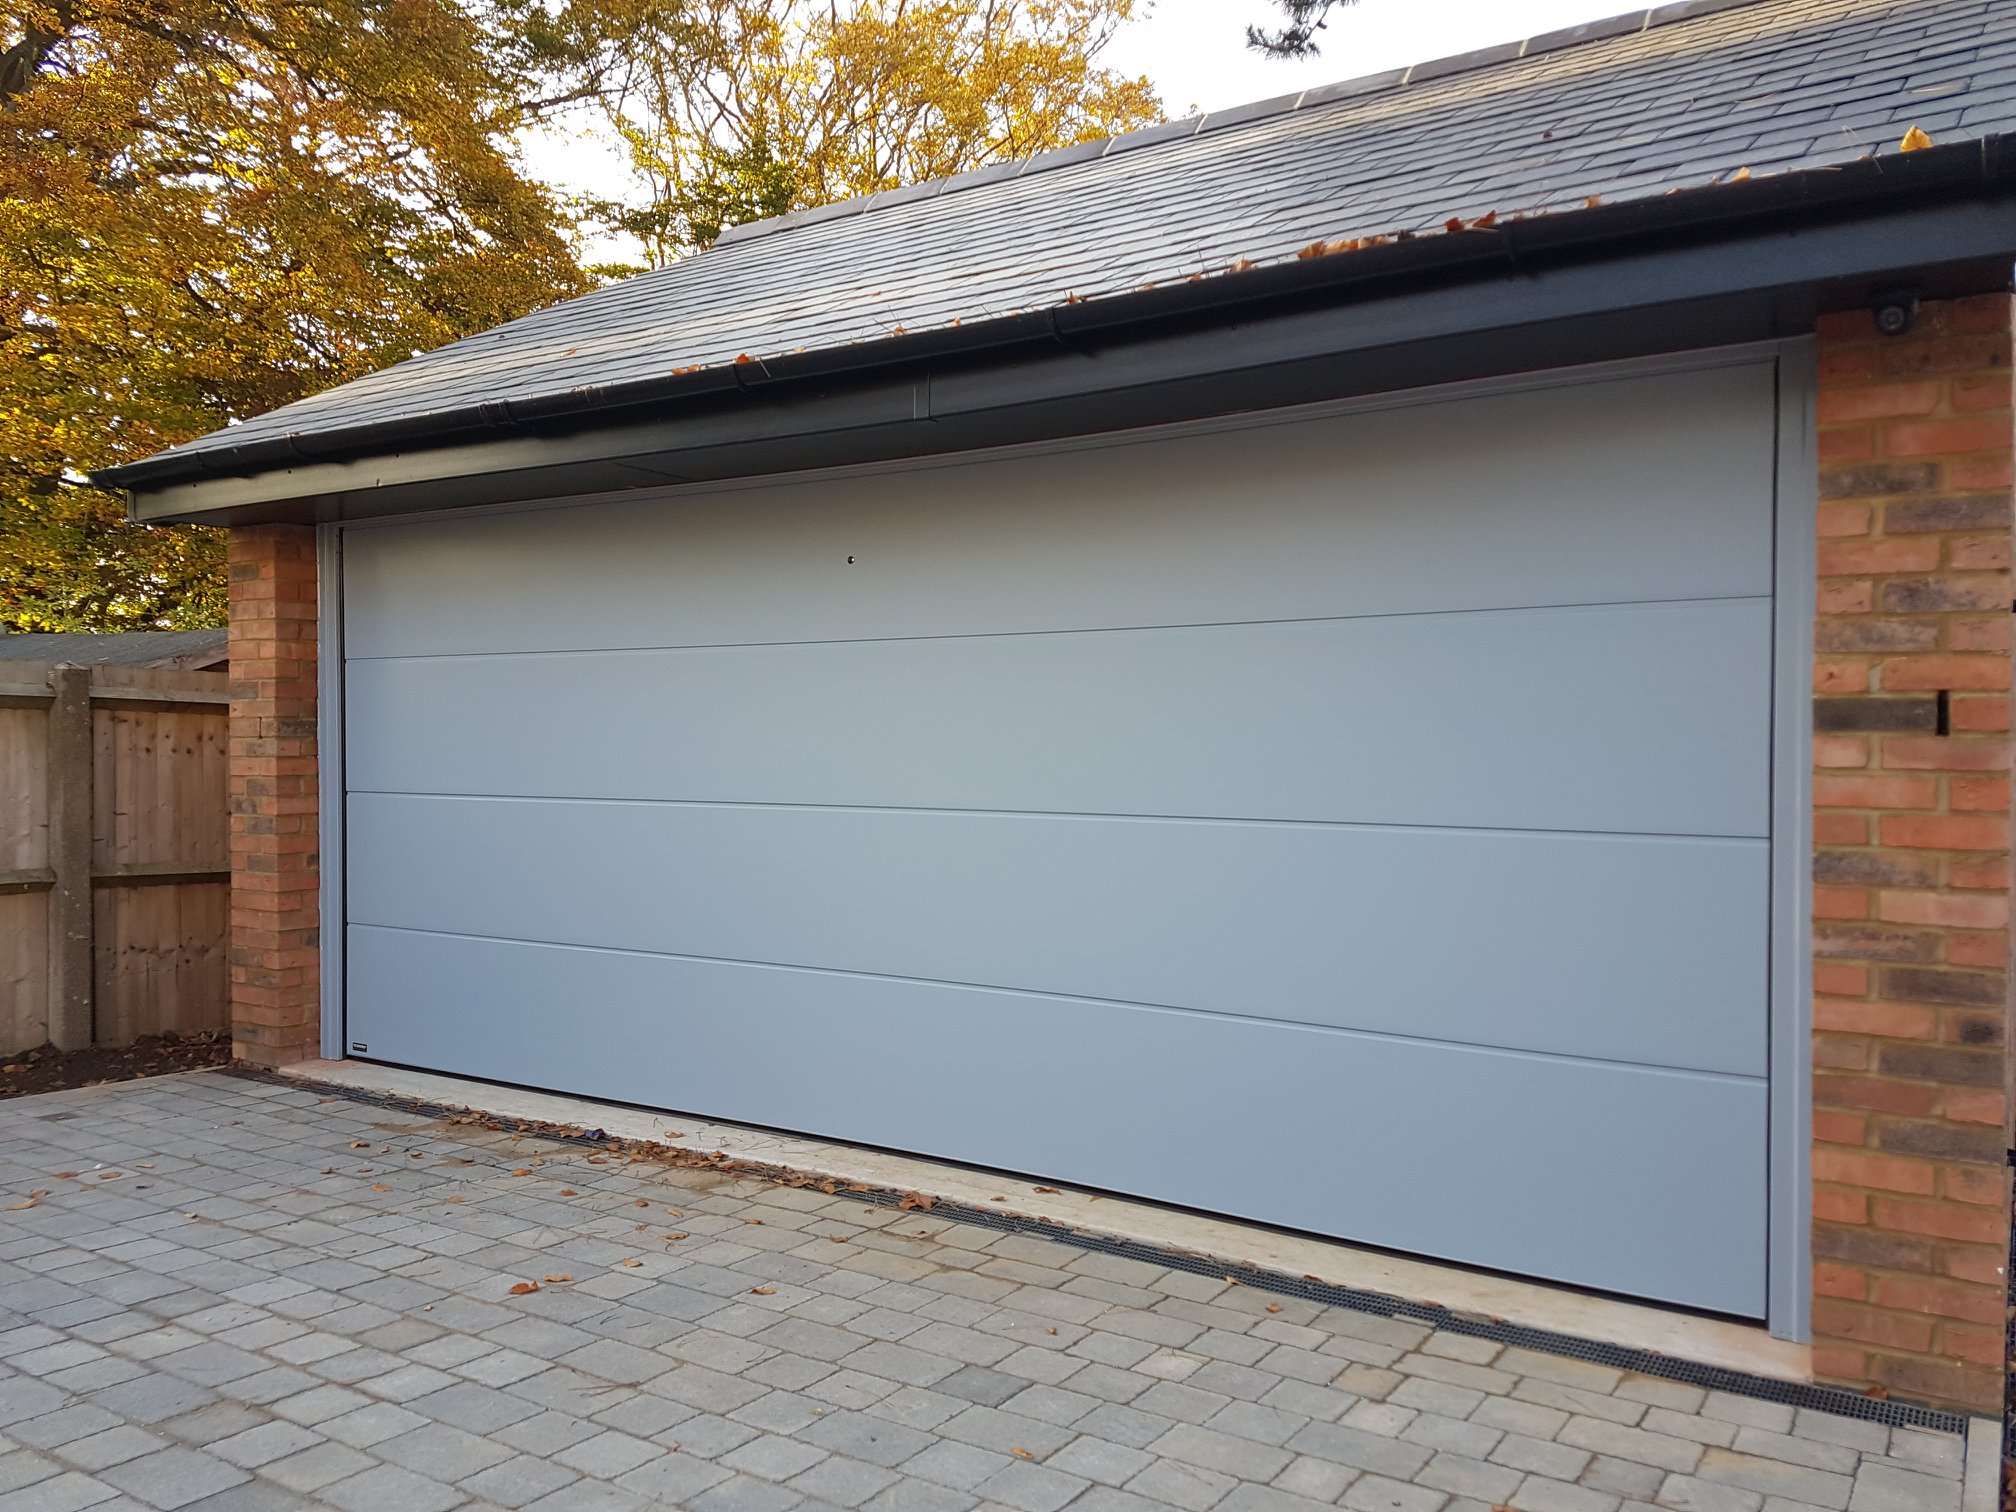 Double insulated garage door